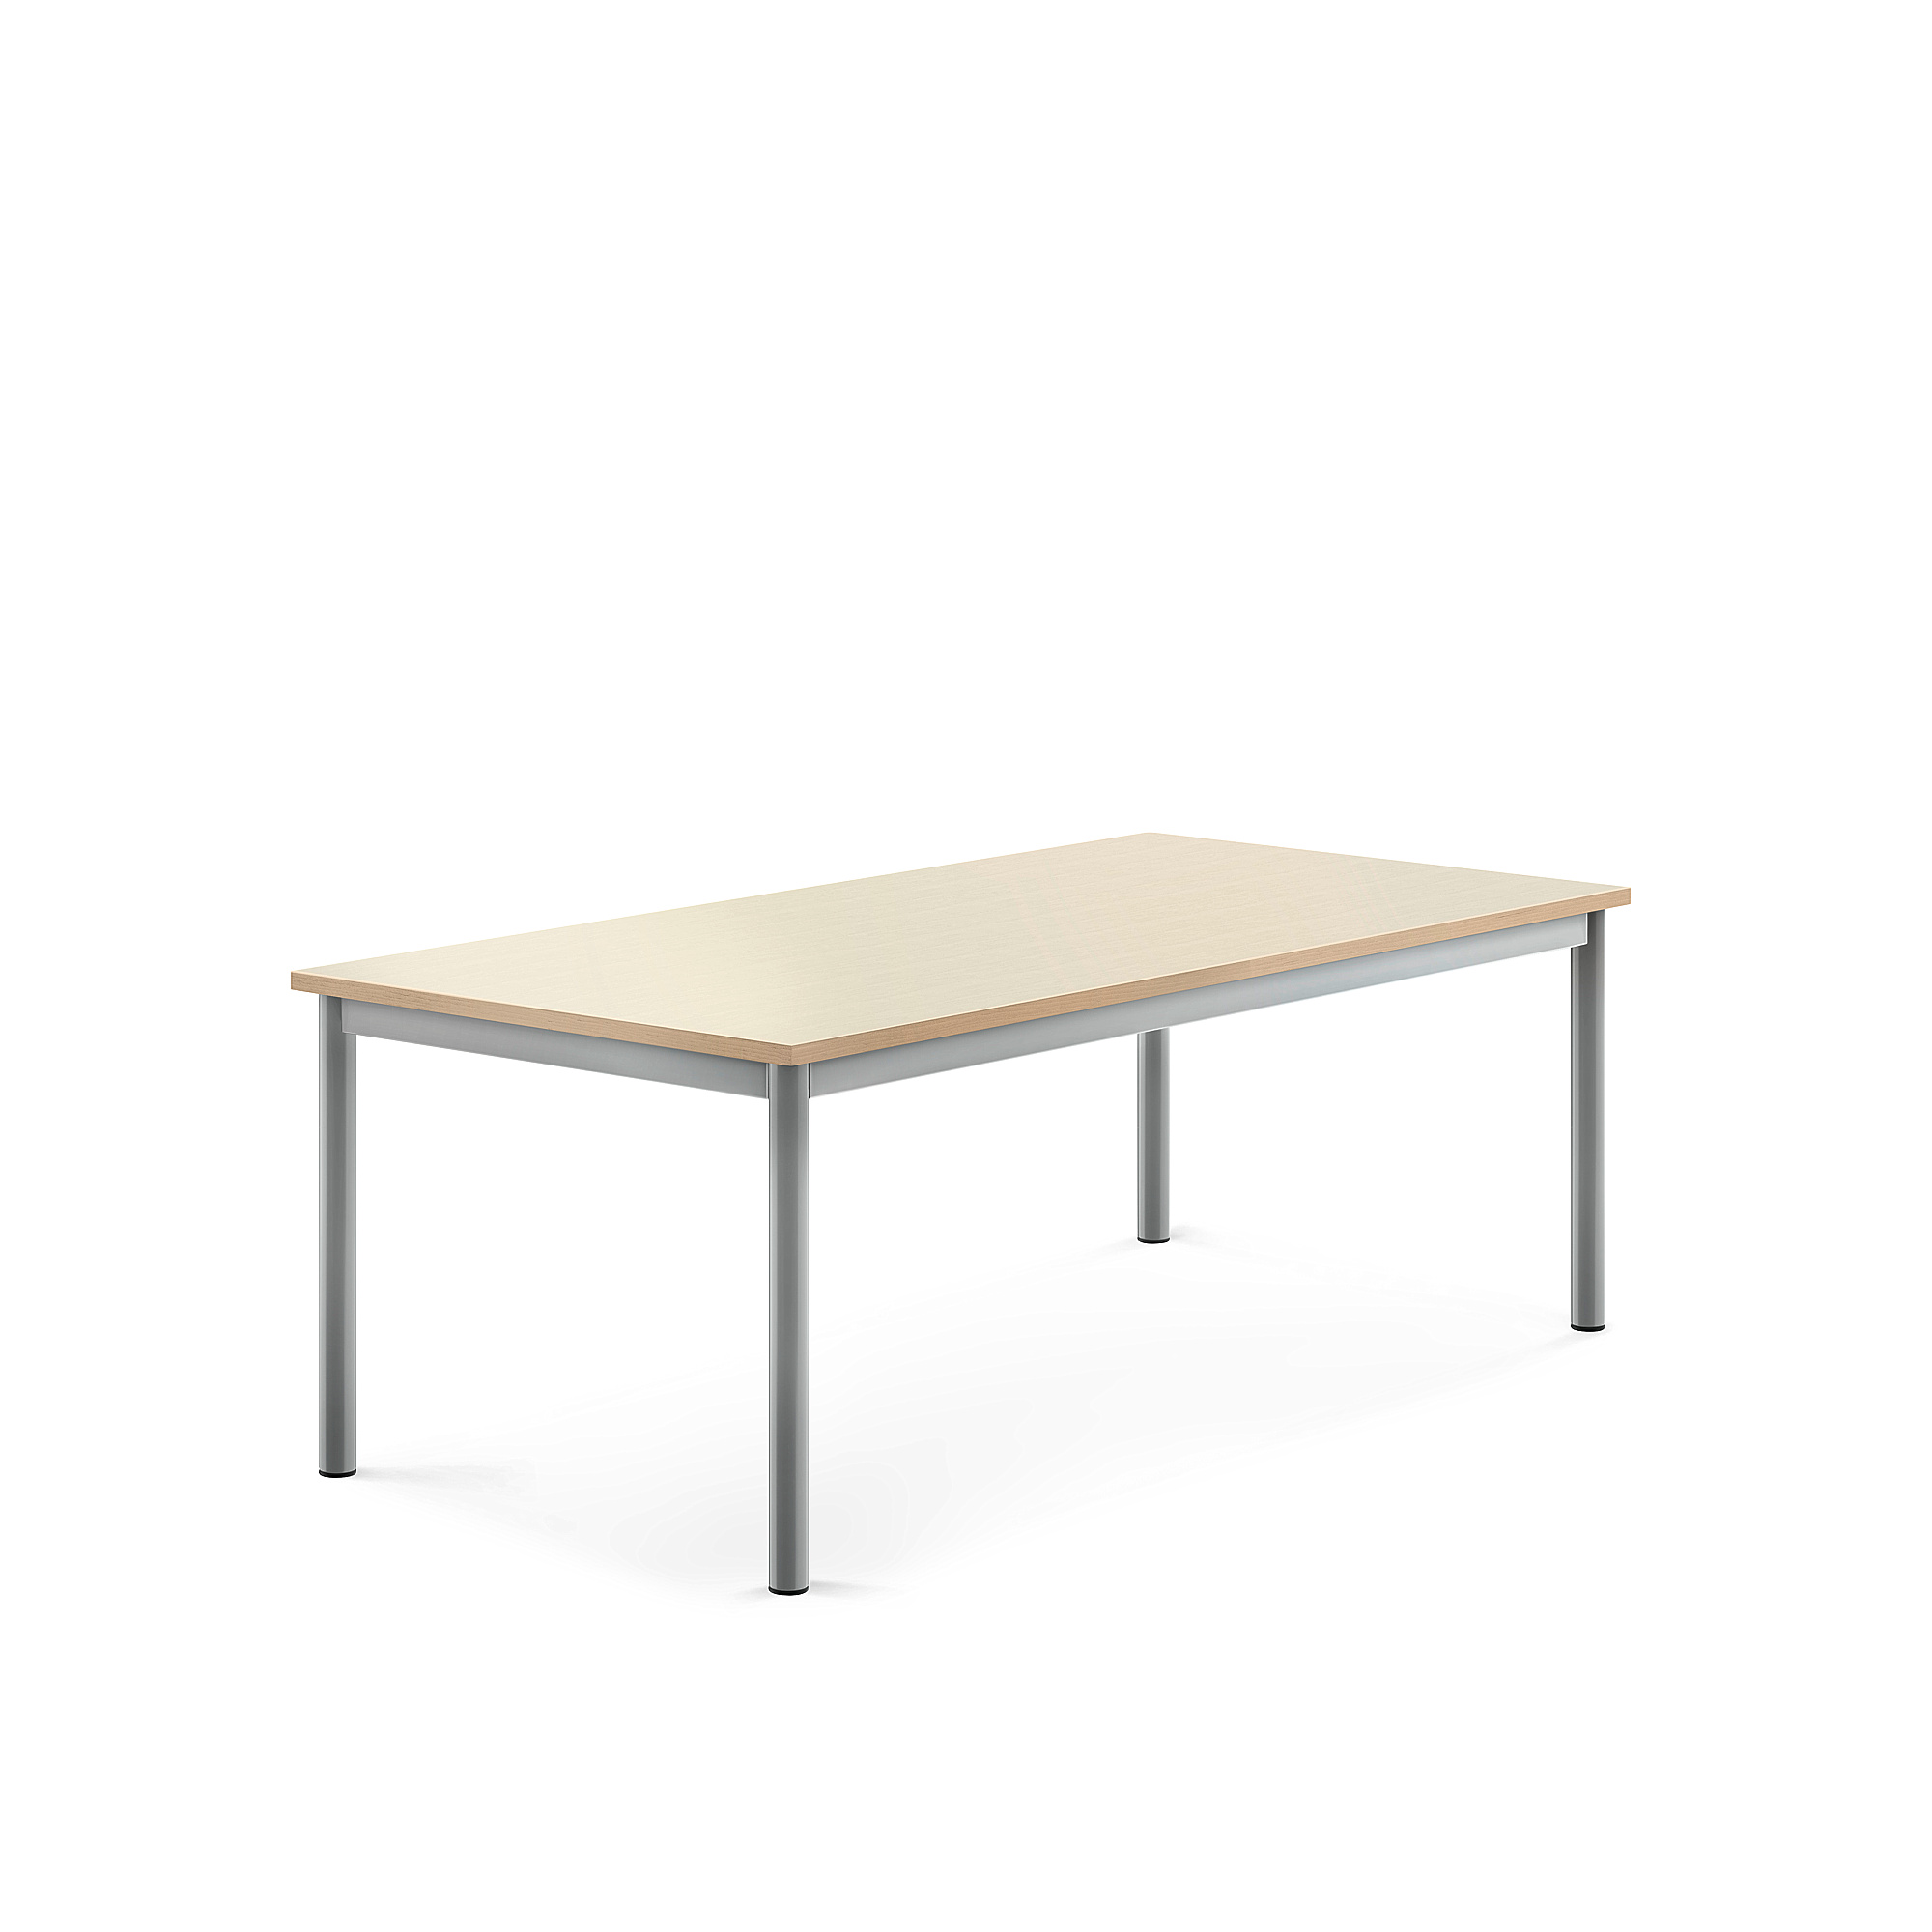 Stůl BORÅS, 1400x700x500 mm, stříbrné nohy, HPL deska, bříza